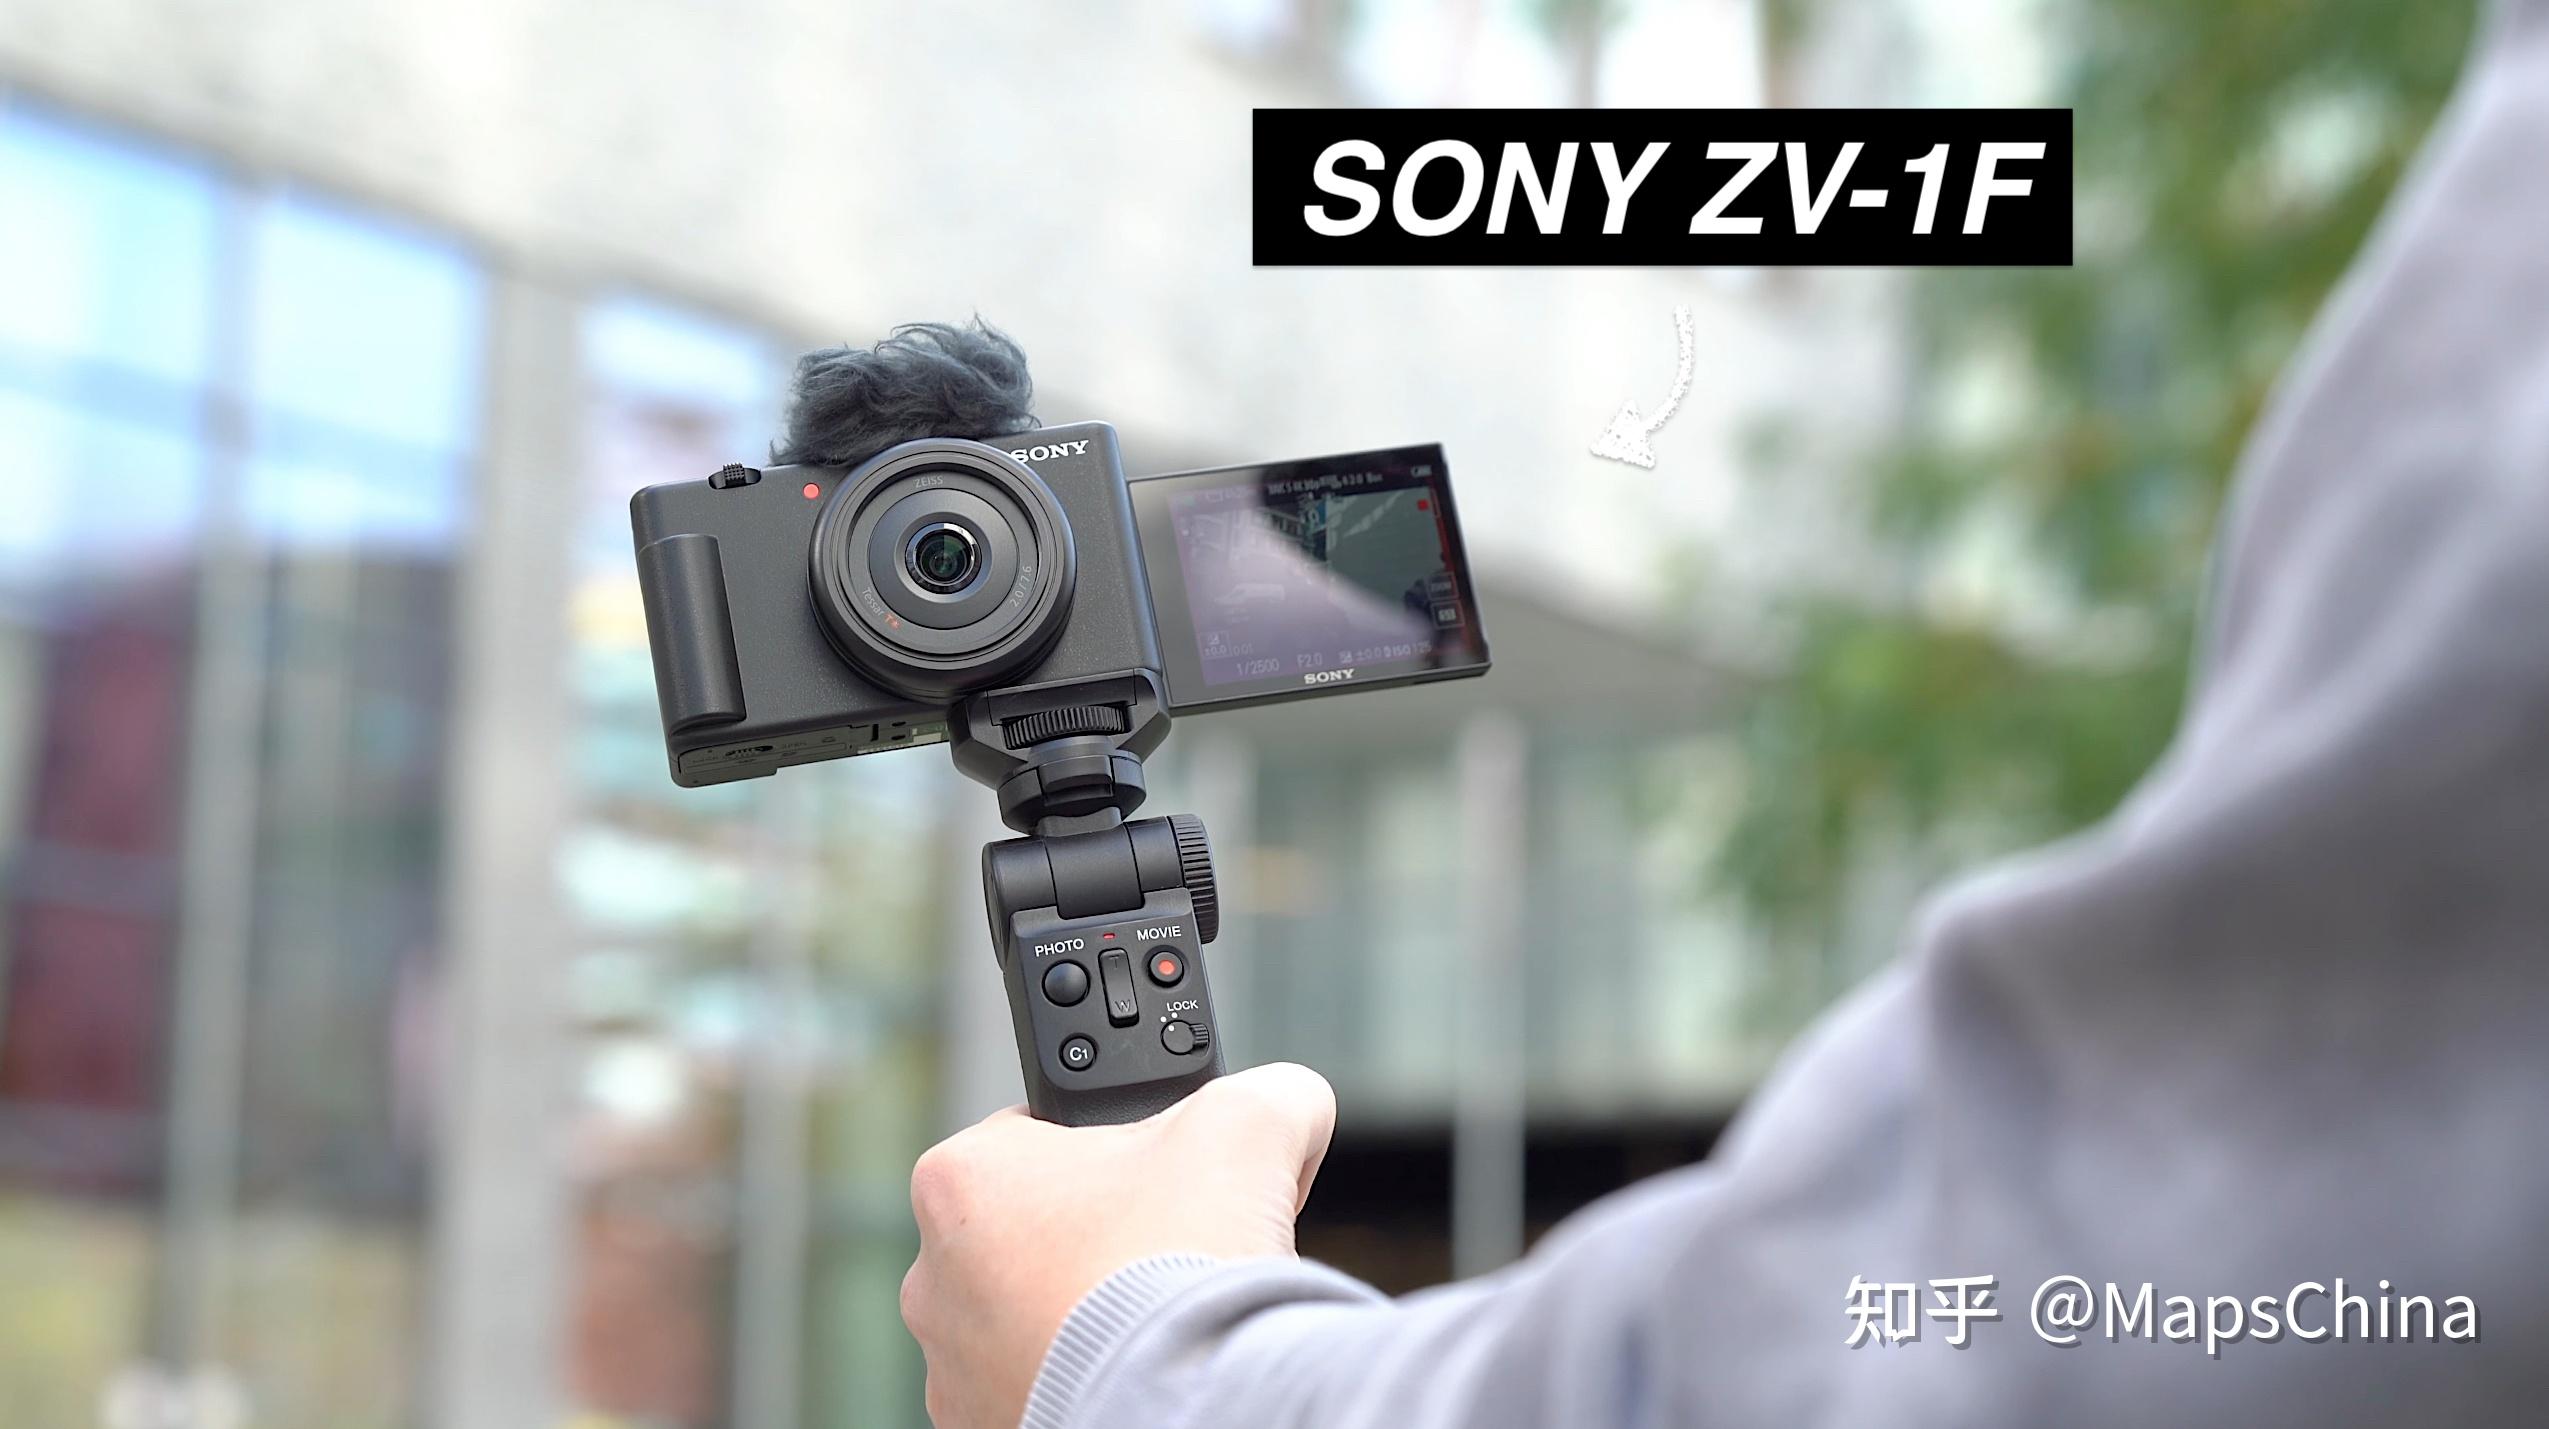 小型高质量直播方案 索尼AX700摄像机介绍_资讯频道-蜂鸟网